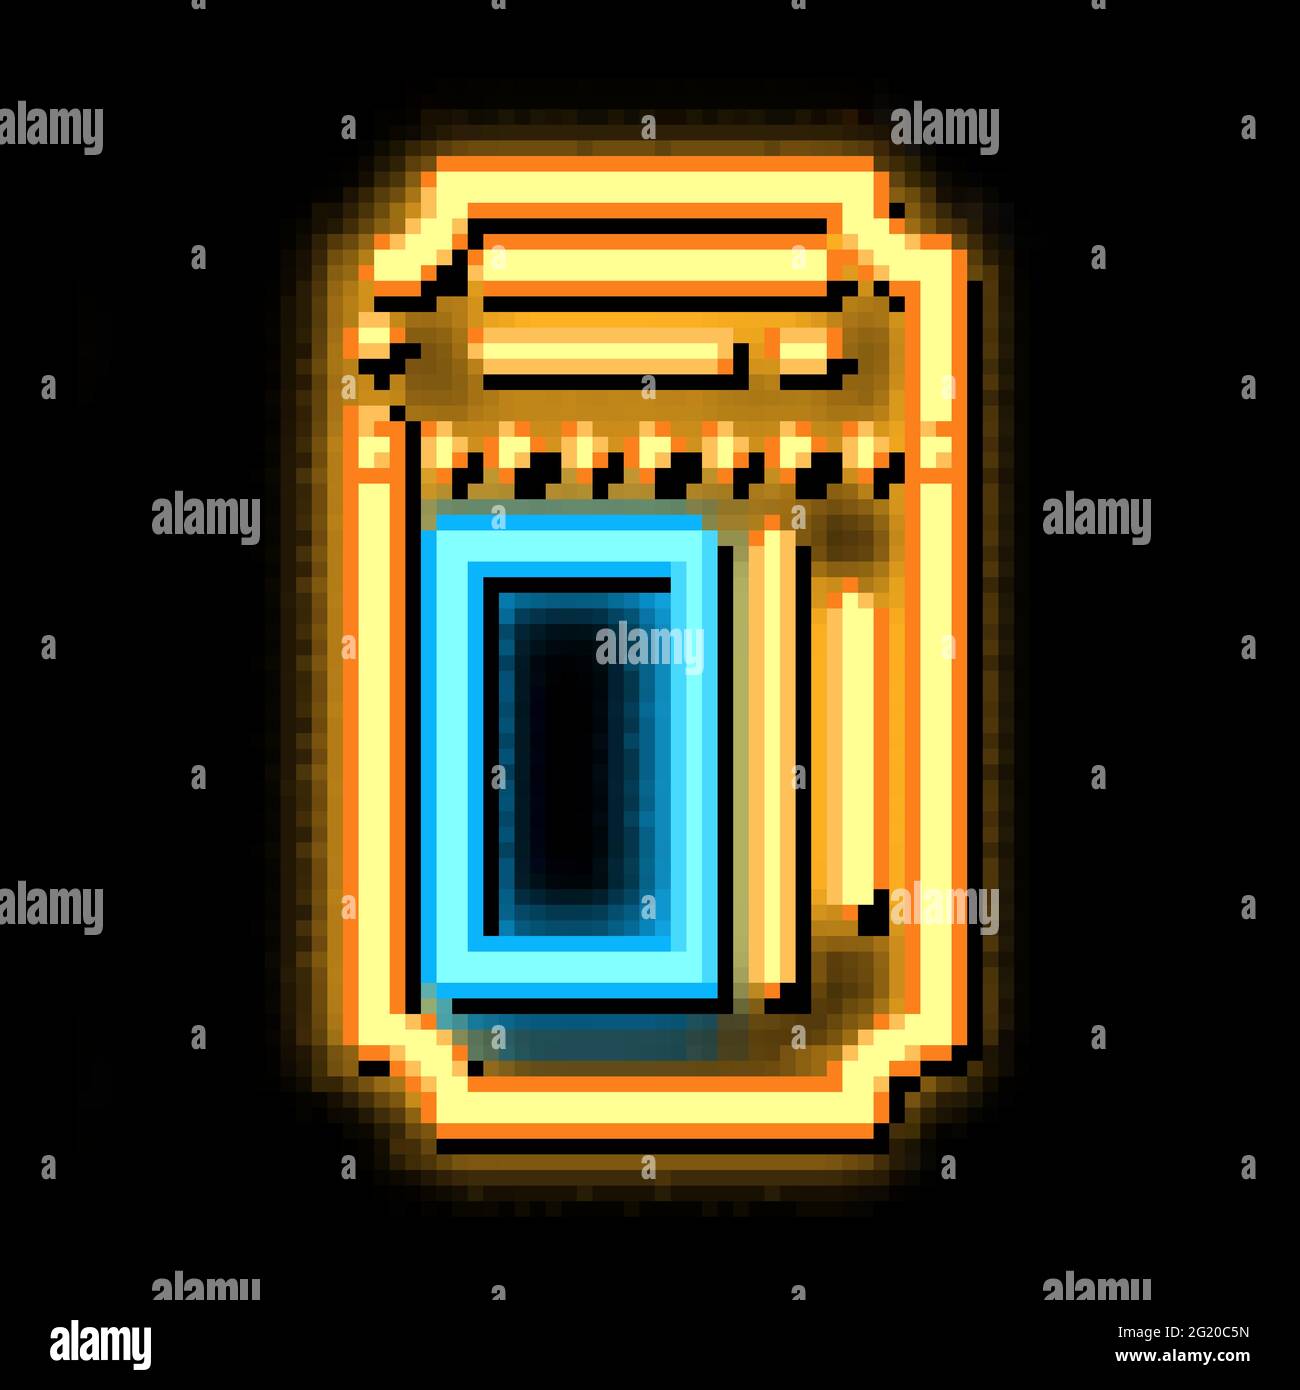 Theater Ticket neon glow icon illustration Stock Vector